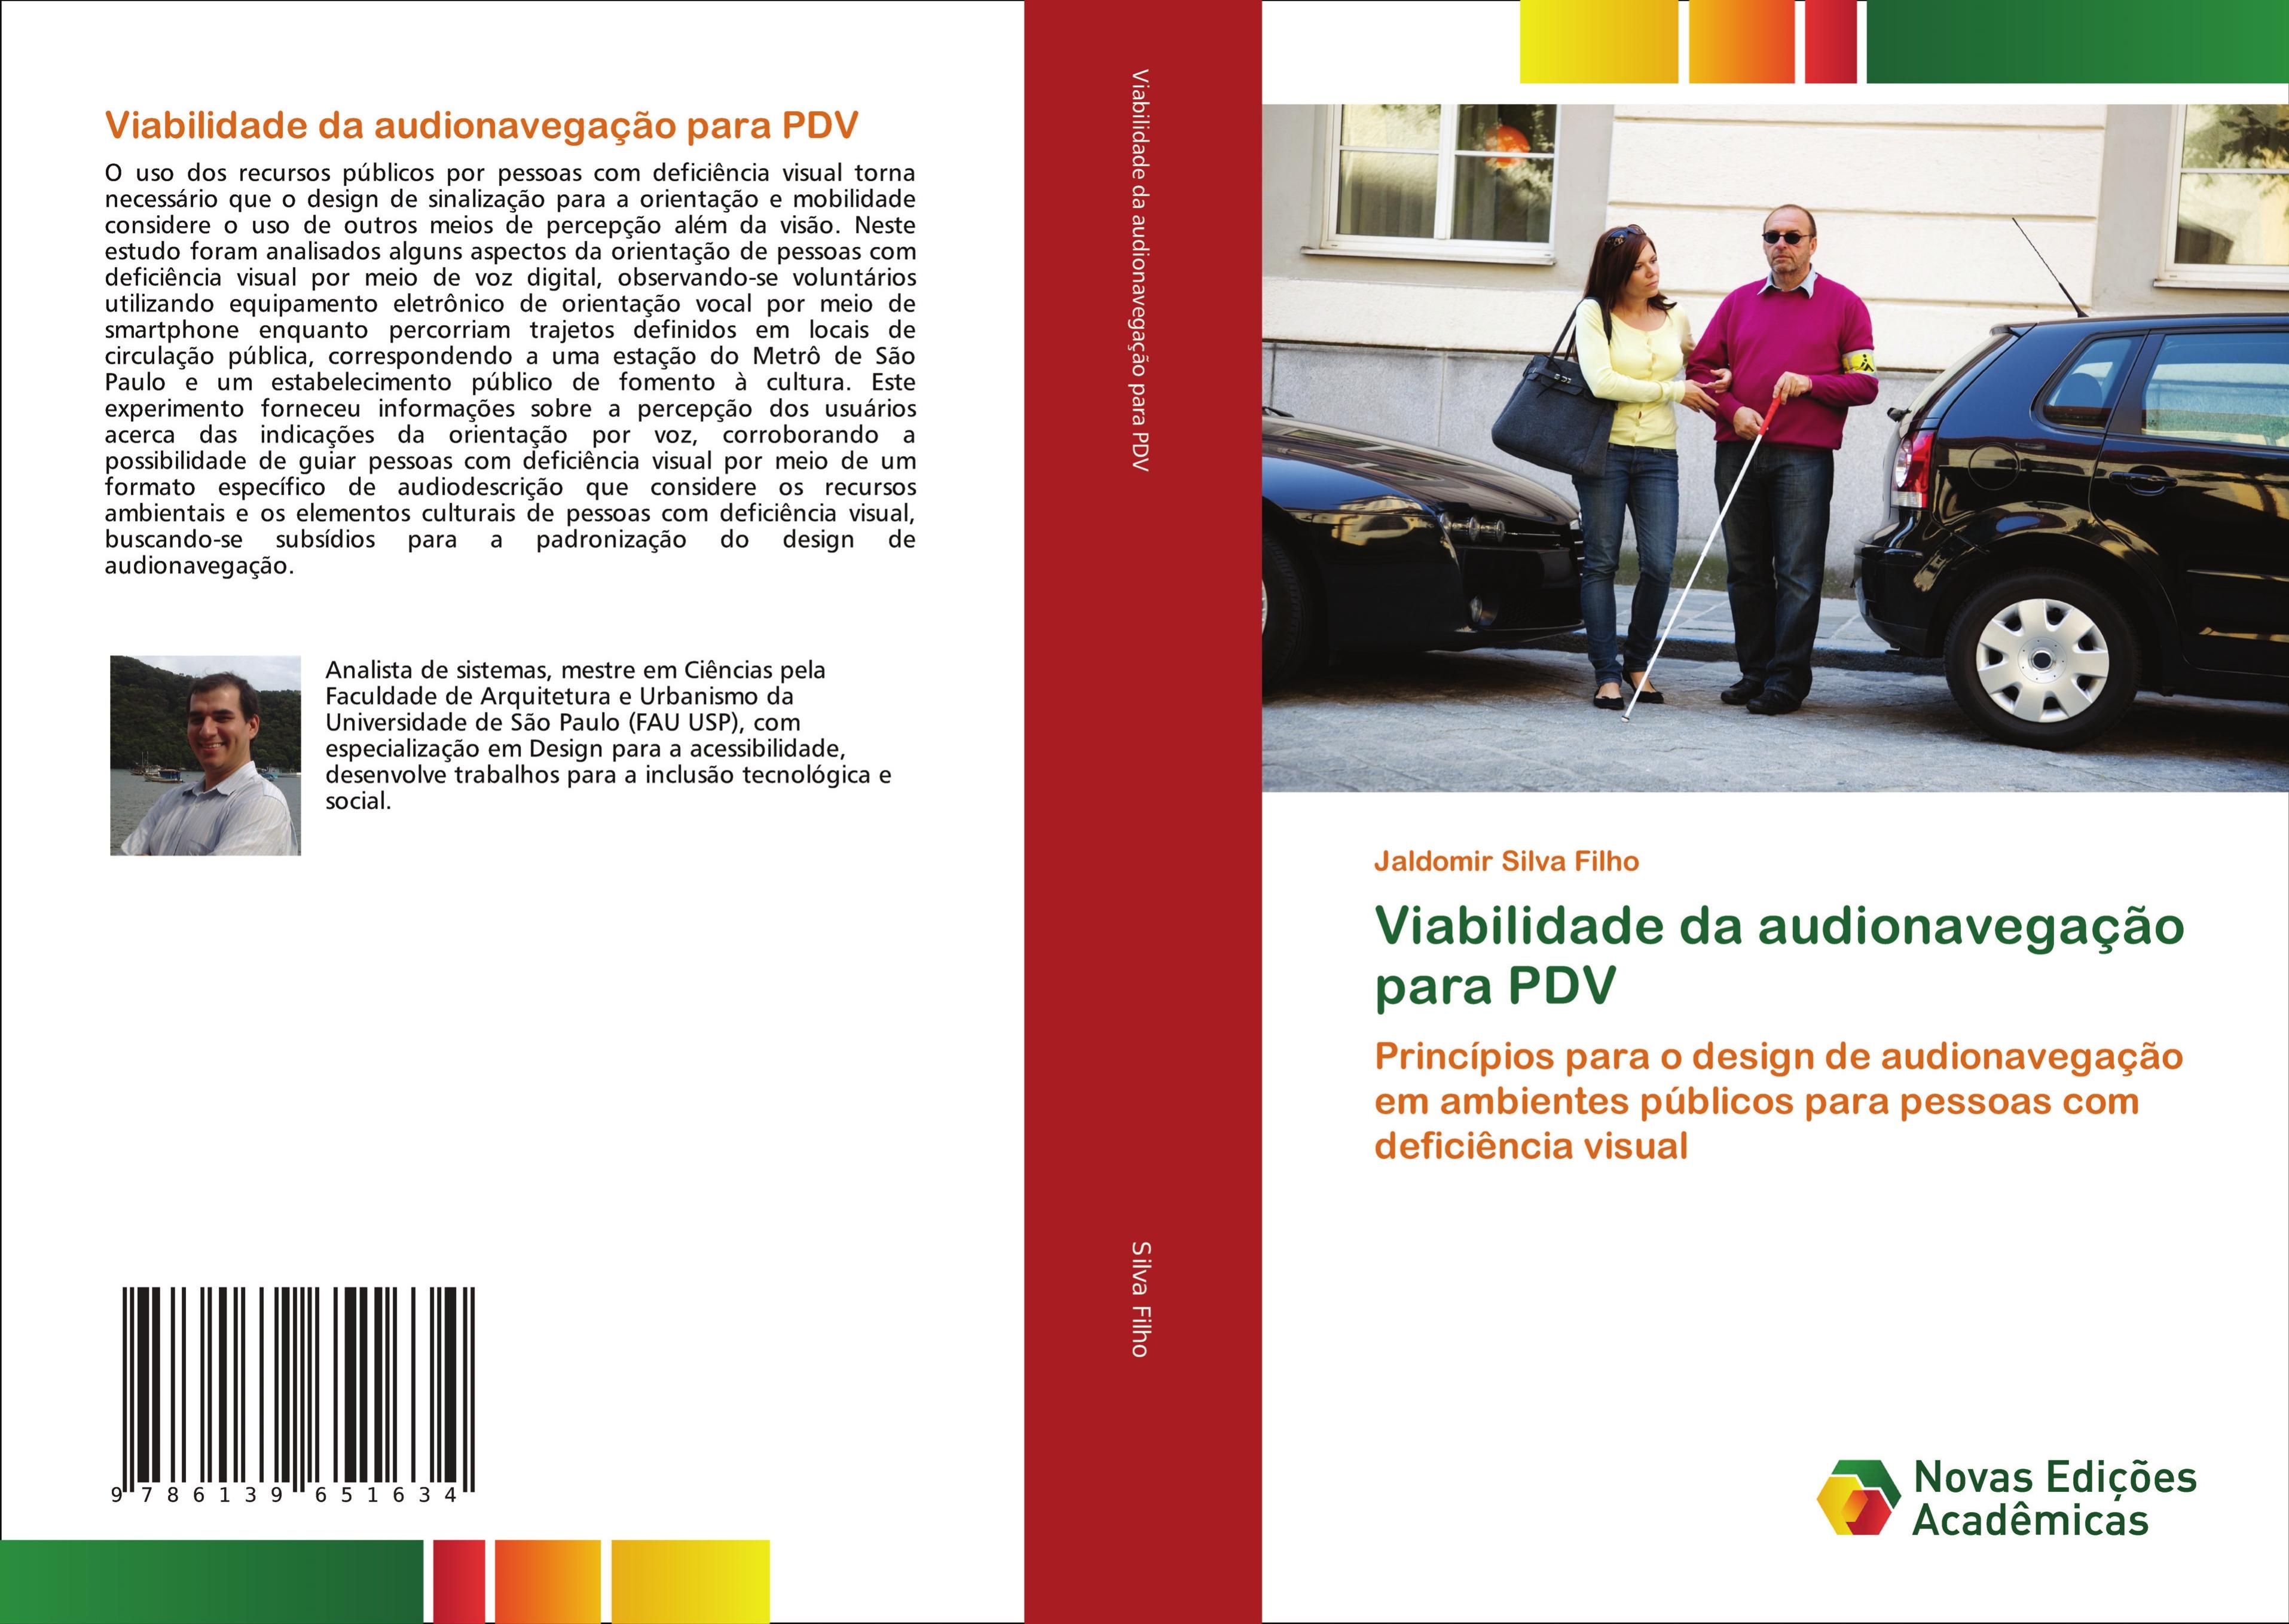 Viabilidade da audionavegação para PDV - Jaldomir Silva Filho